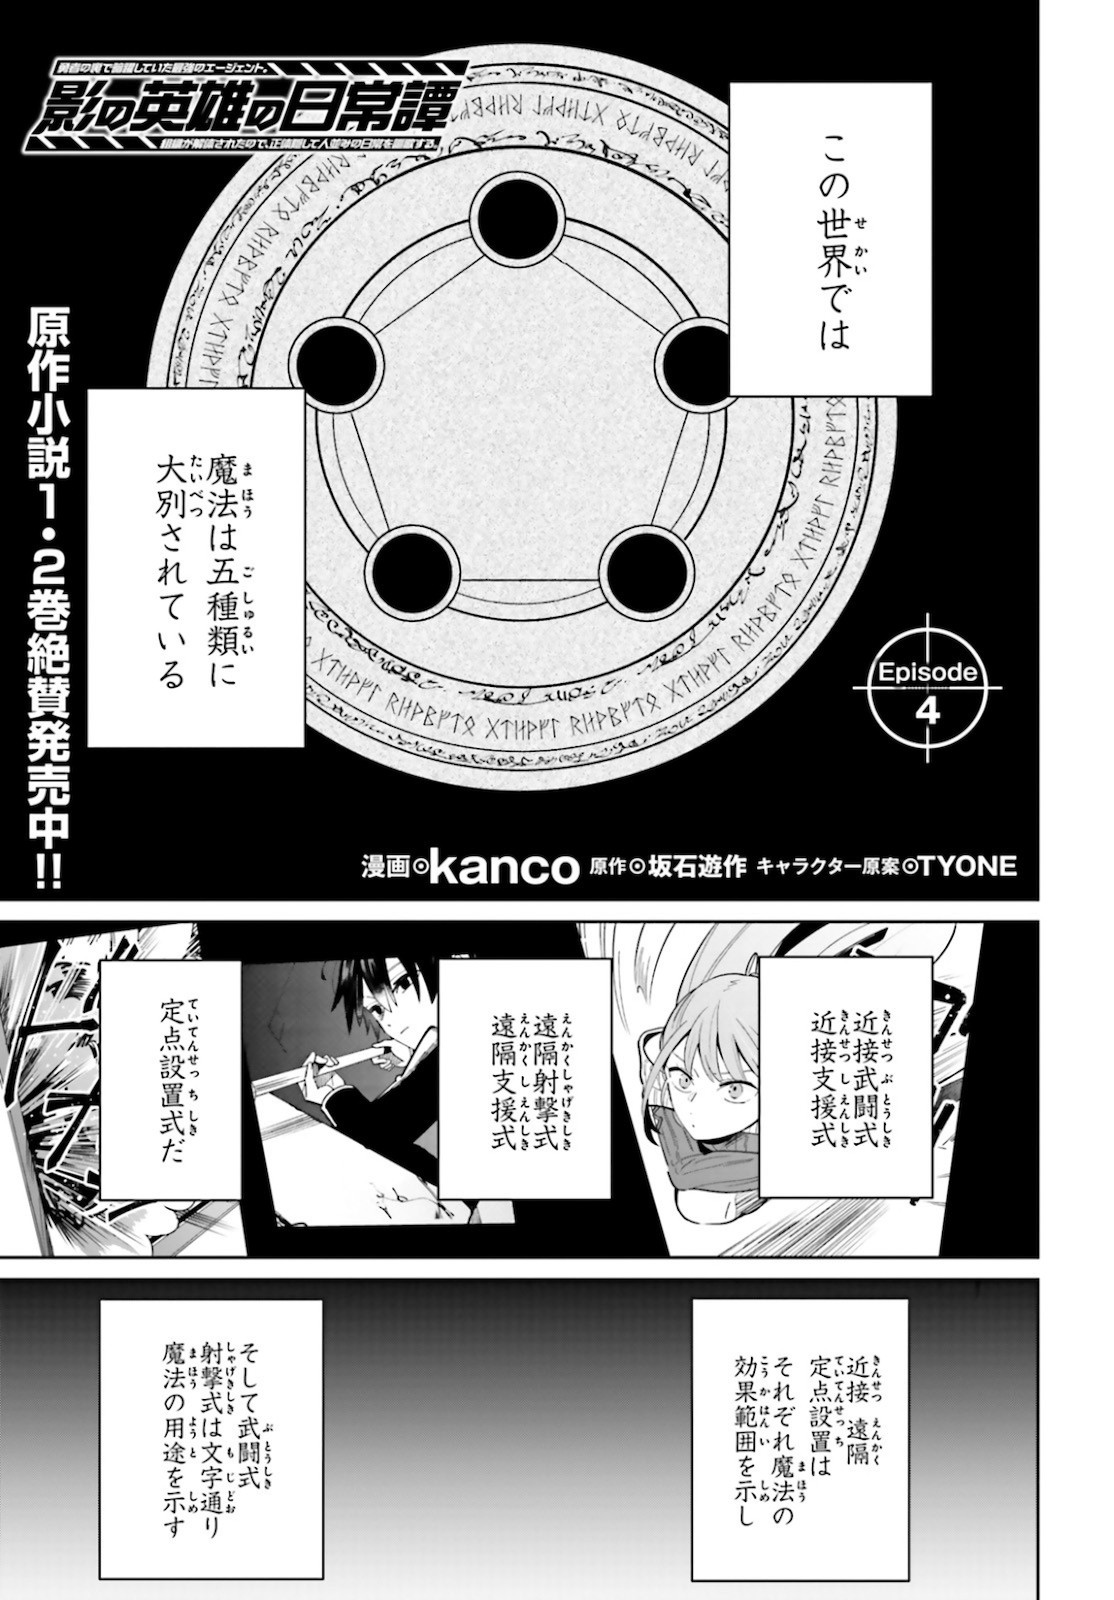 Kage-no-Eiyuu-no-Nichijou-tan-Ichi-no-Yuusha-no-Ura-de-An'yaku-Shite-ita-Saikyou-no-Eijento-Soshiki-ga-Kaitai-sareta-no-de-Shoutai-Kakushite-Hito-nami-no-Nichijou-o-Ouka-suru - Chapter 04 - Page 1